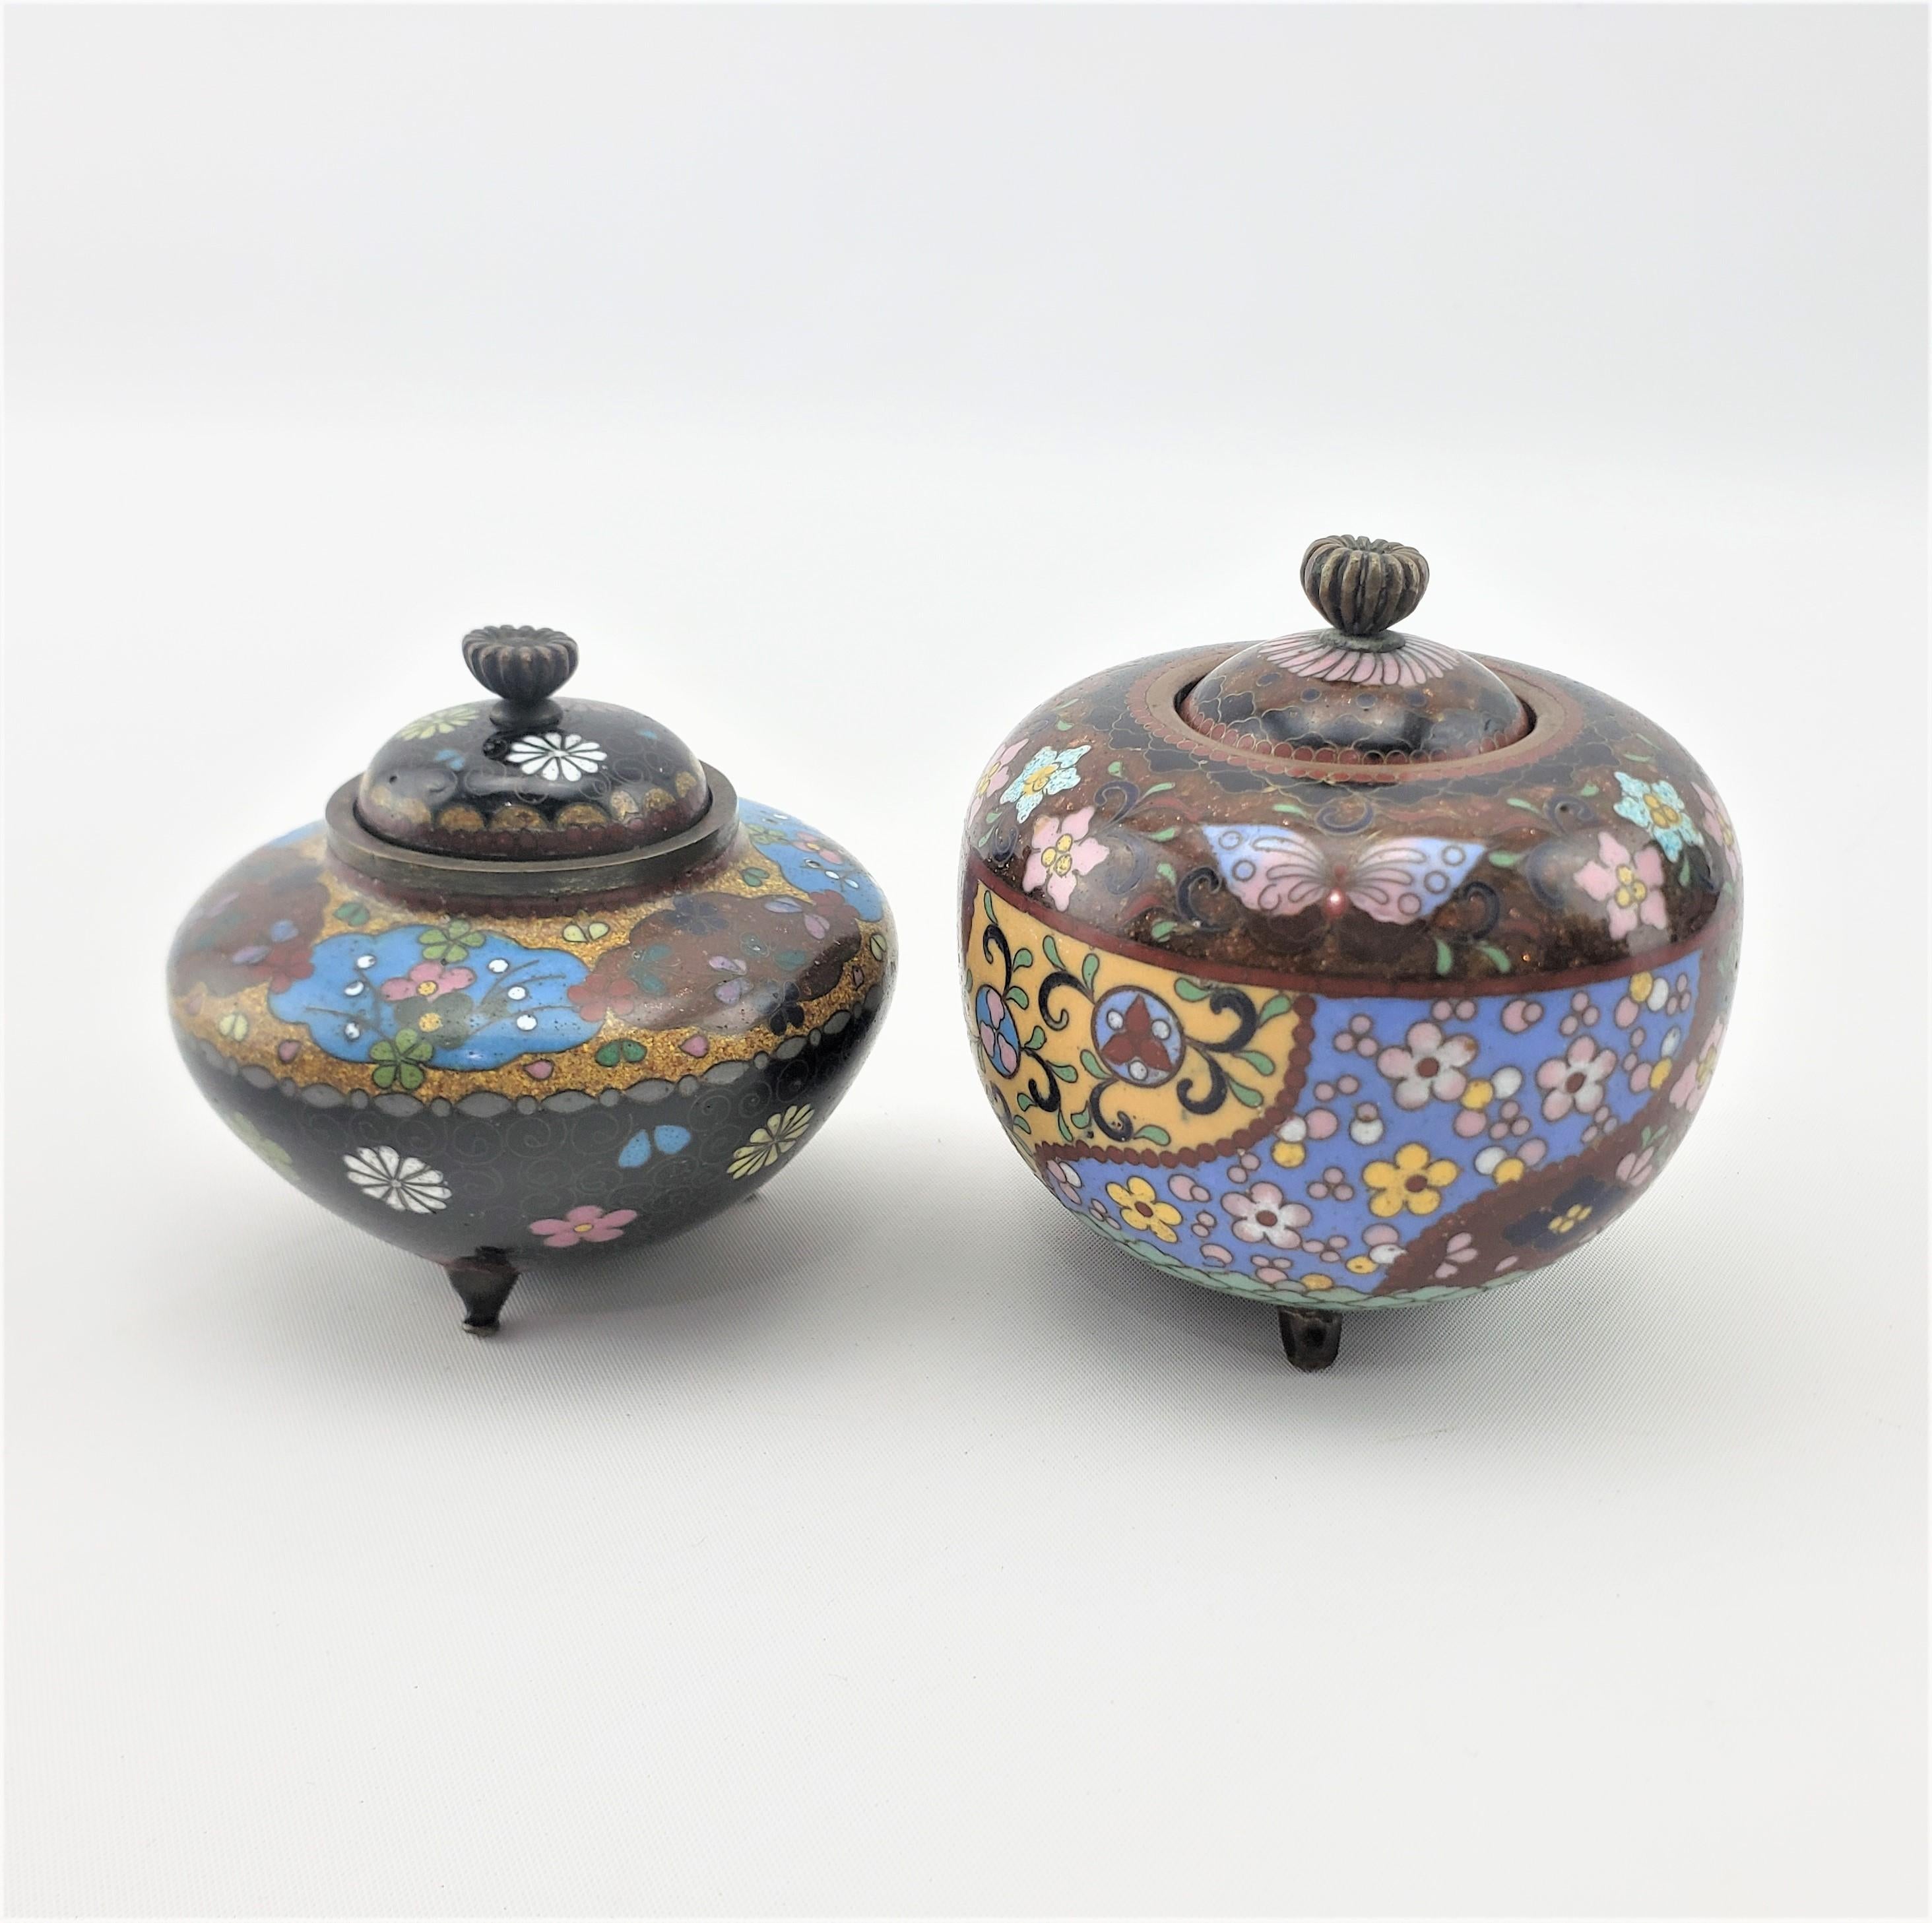 Cette paire de jarres ou d'urnes antiques couvertes de cloisonné n'est pas signée, mais provient du Japon et date d'environ 1900 dans un style d'exportation japonais. La paire est réalisée dans des tons sourds et est décorée d'un motif floral.